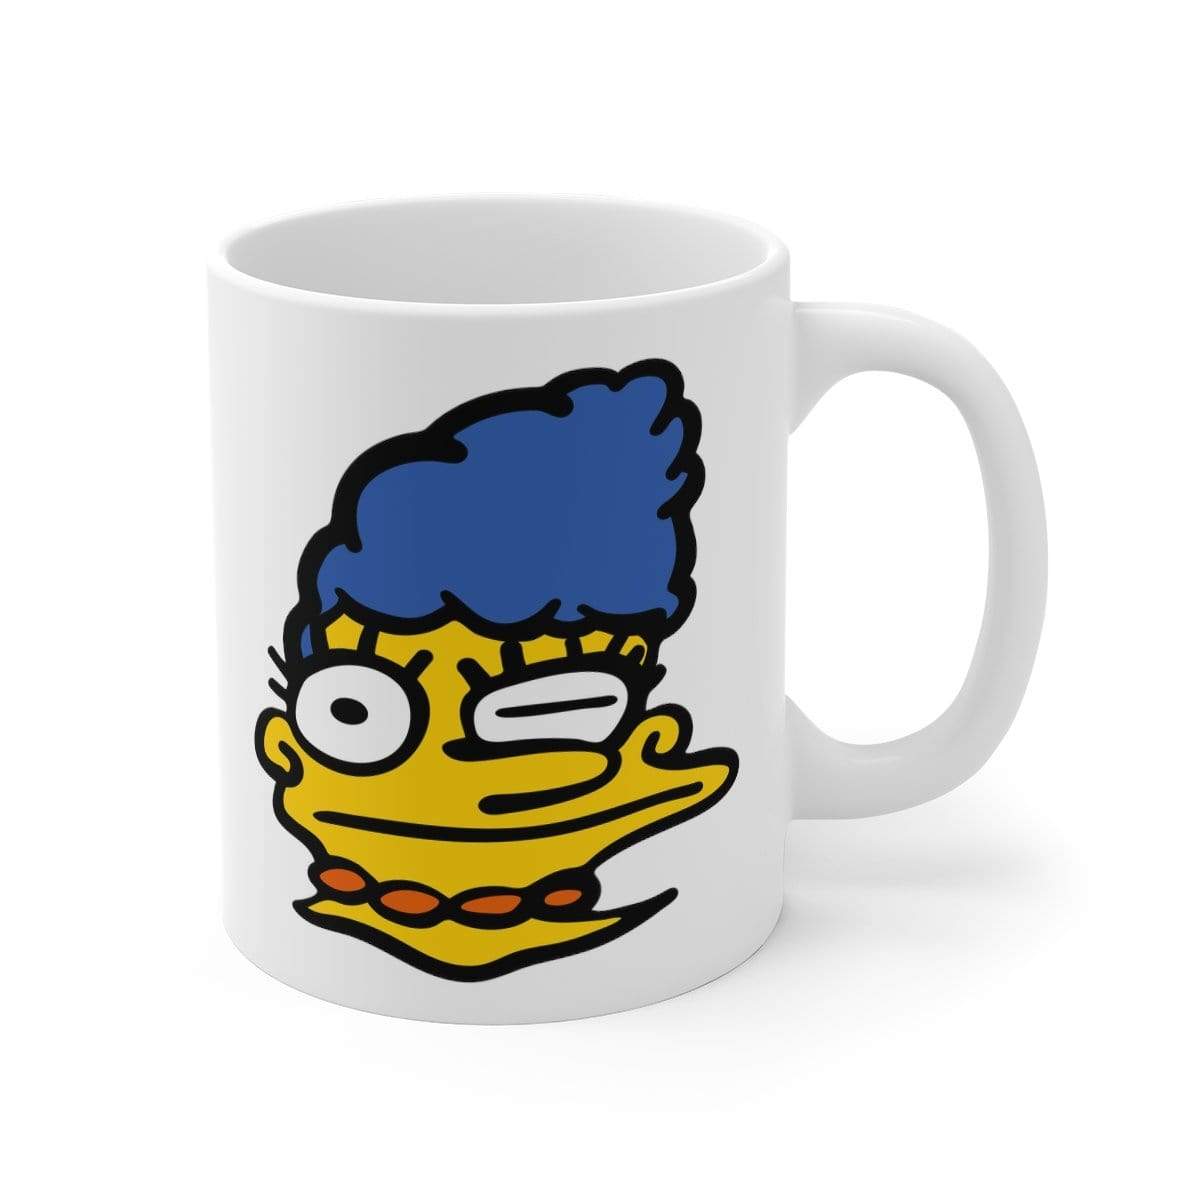 Smeared Marge 👕 - Coffee Mug